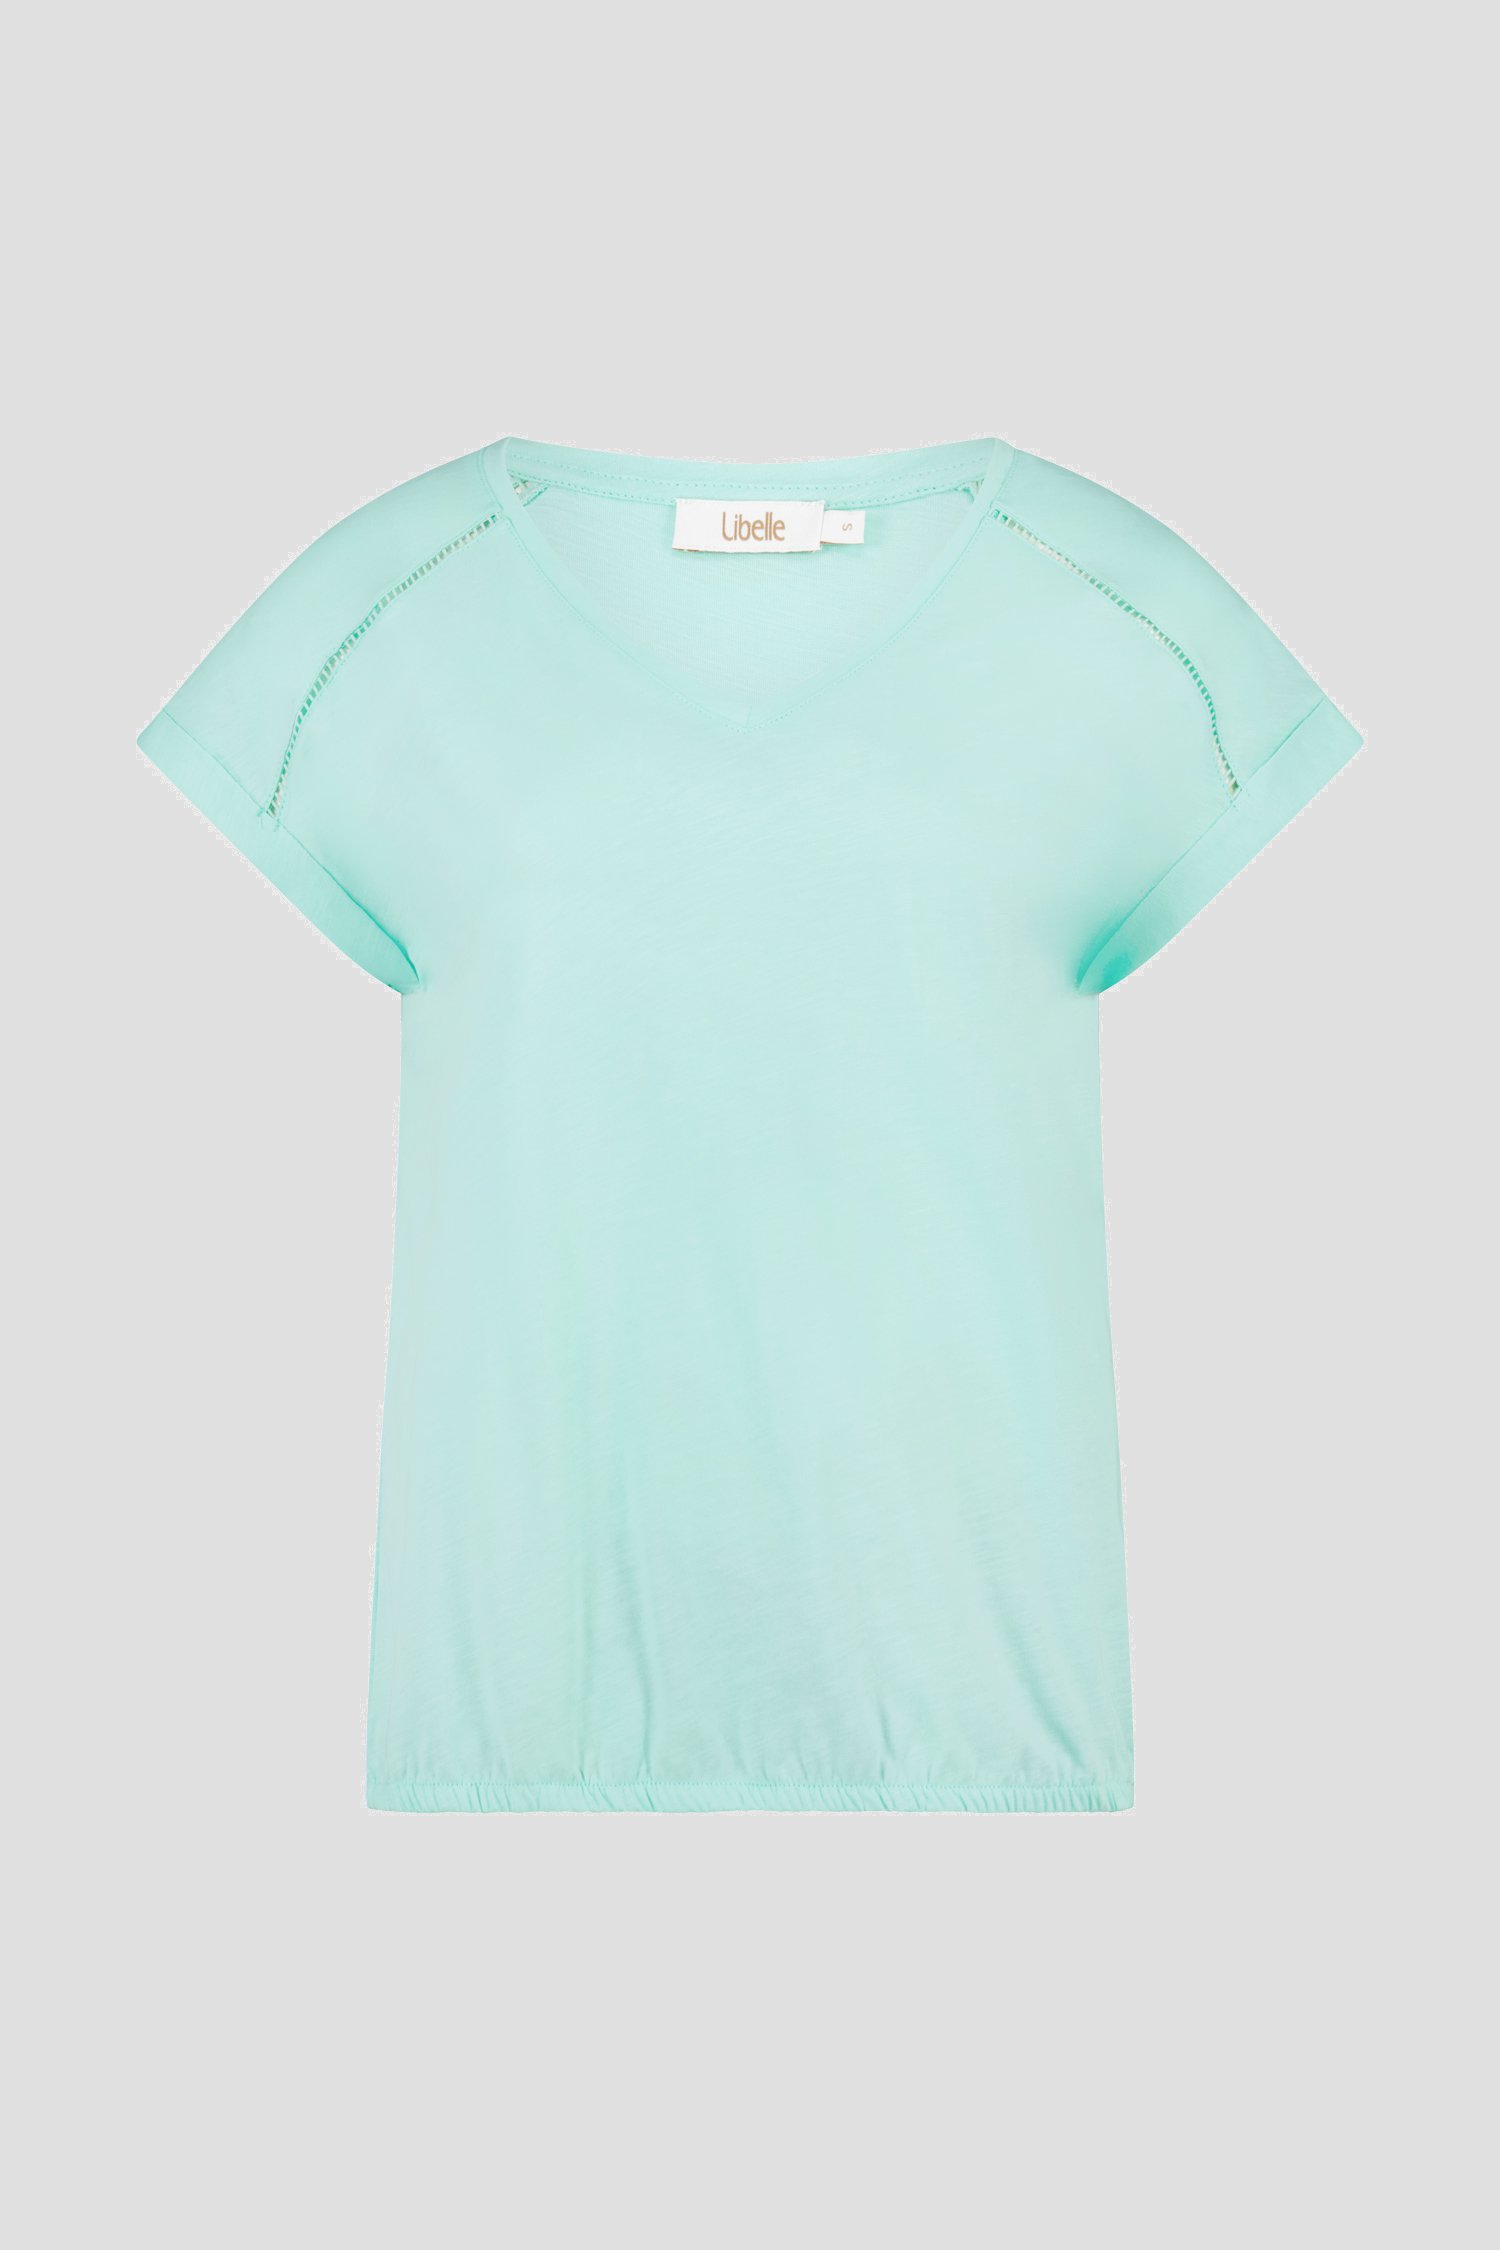 T-shirt bleu clair de Libelle pour Femmes